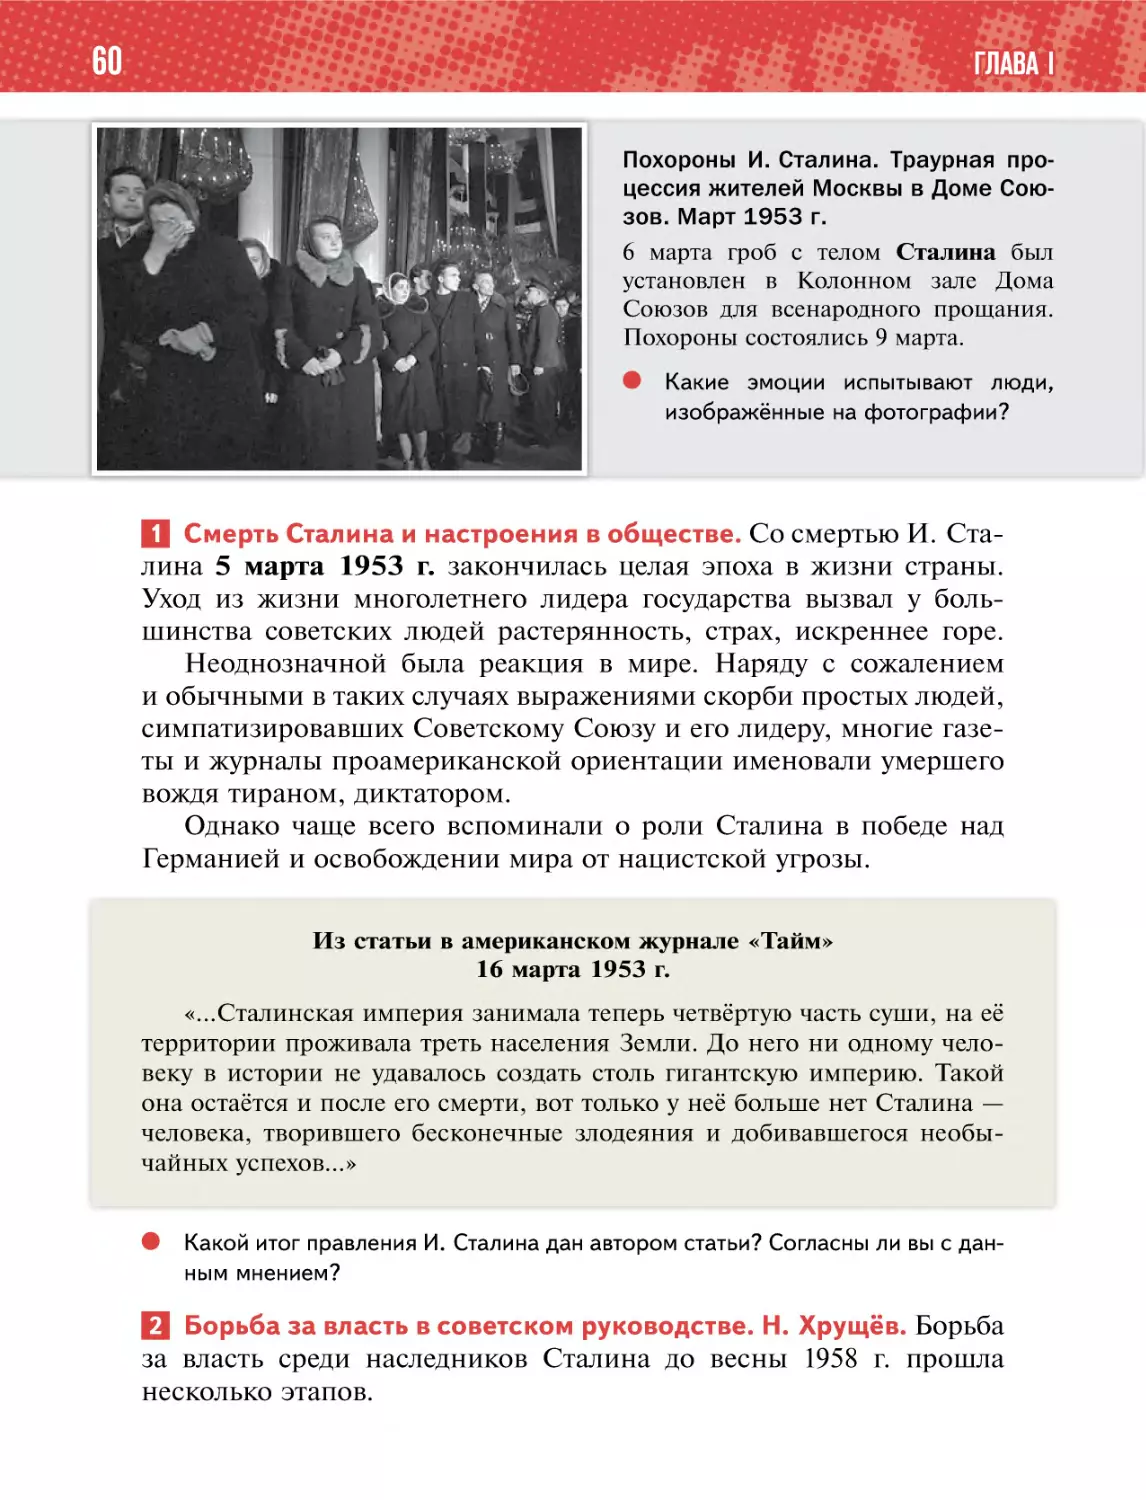 1 Смерть Сталина и настроения в обществе
2 Борьба за власть в советском руководстве. Н. Хрущёв